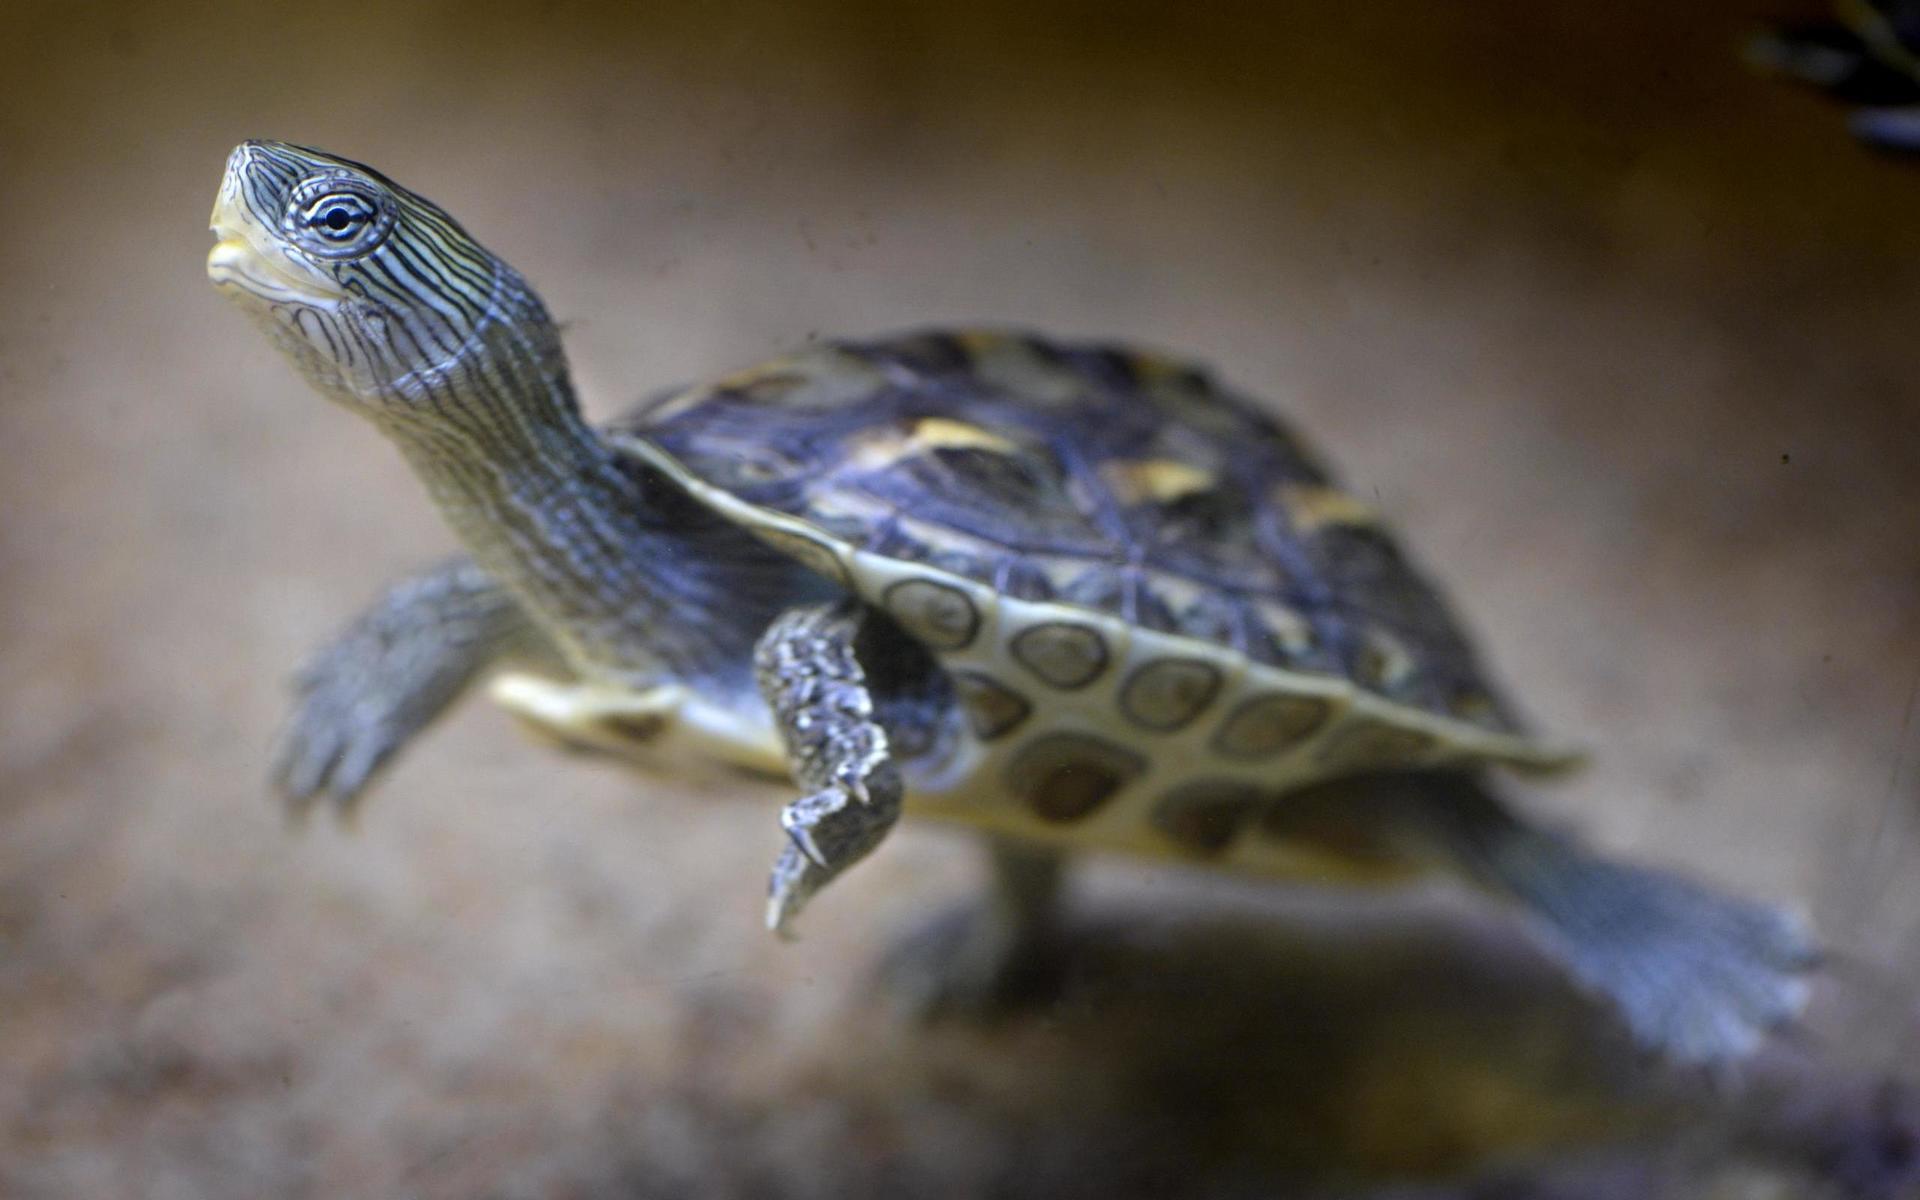 En kinesisk randig vattensköldpadda. Den kan bli 25-30 centimeter lång och lever i 30-40 år.